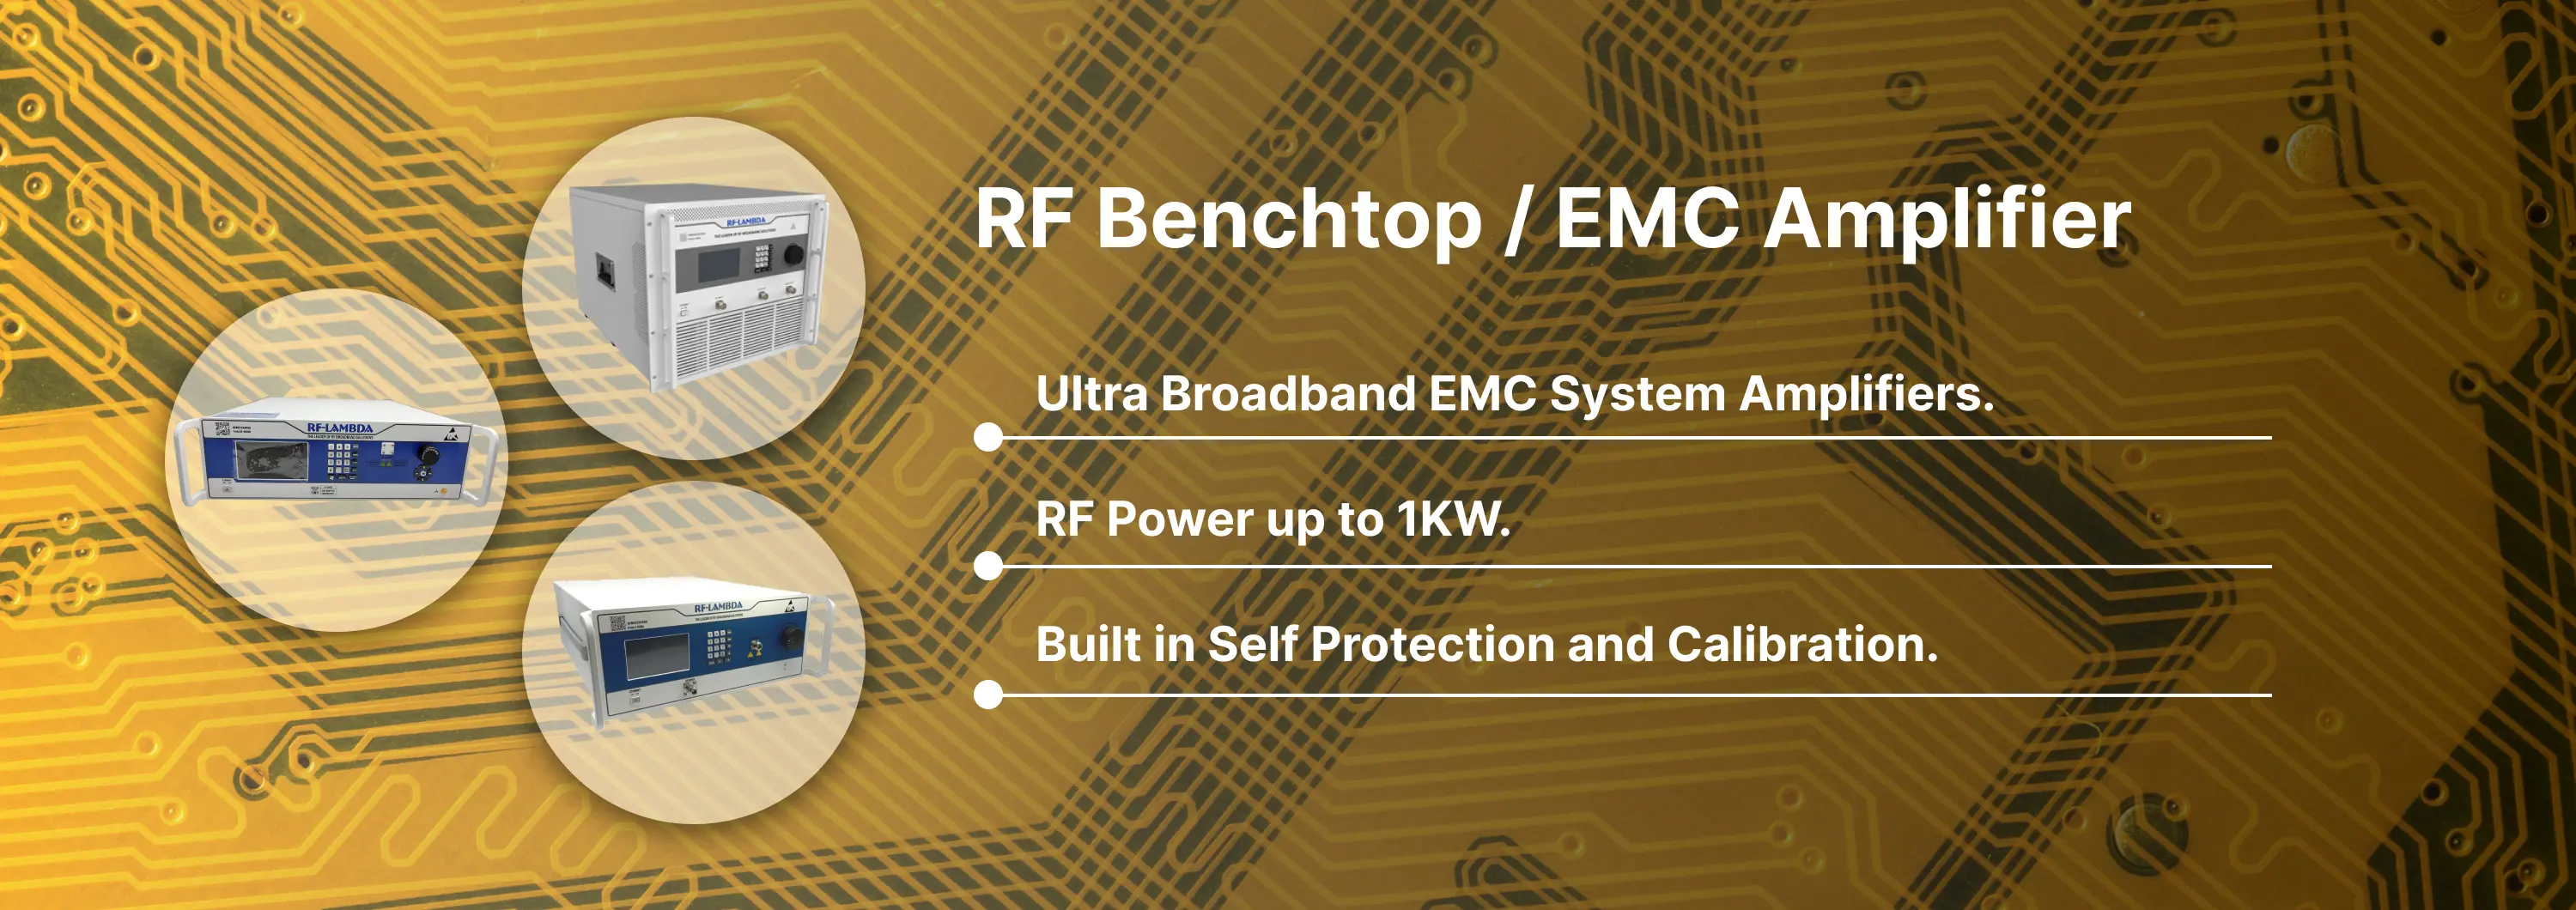 RF Benchtop / EMC Amplifier (110/220V) Banner